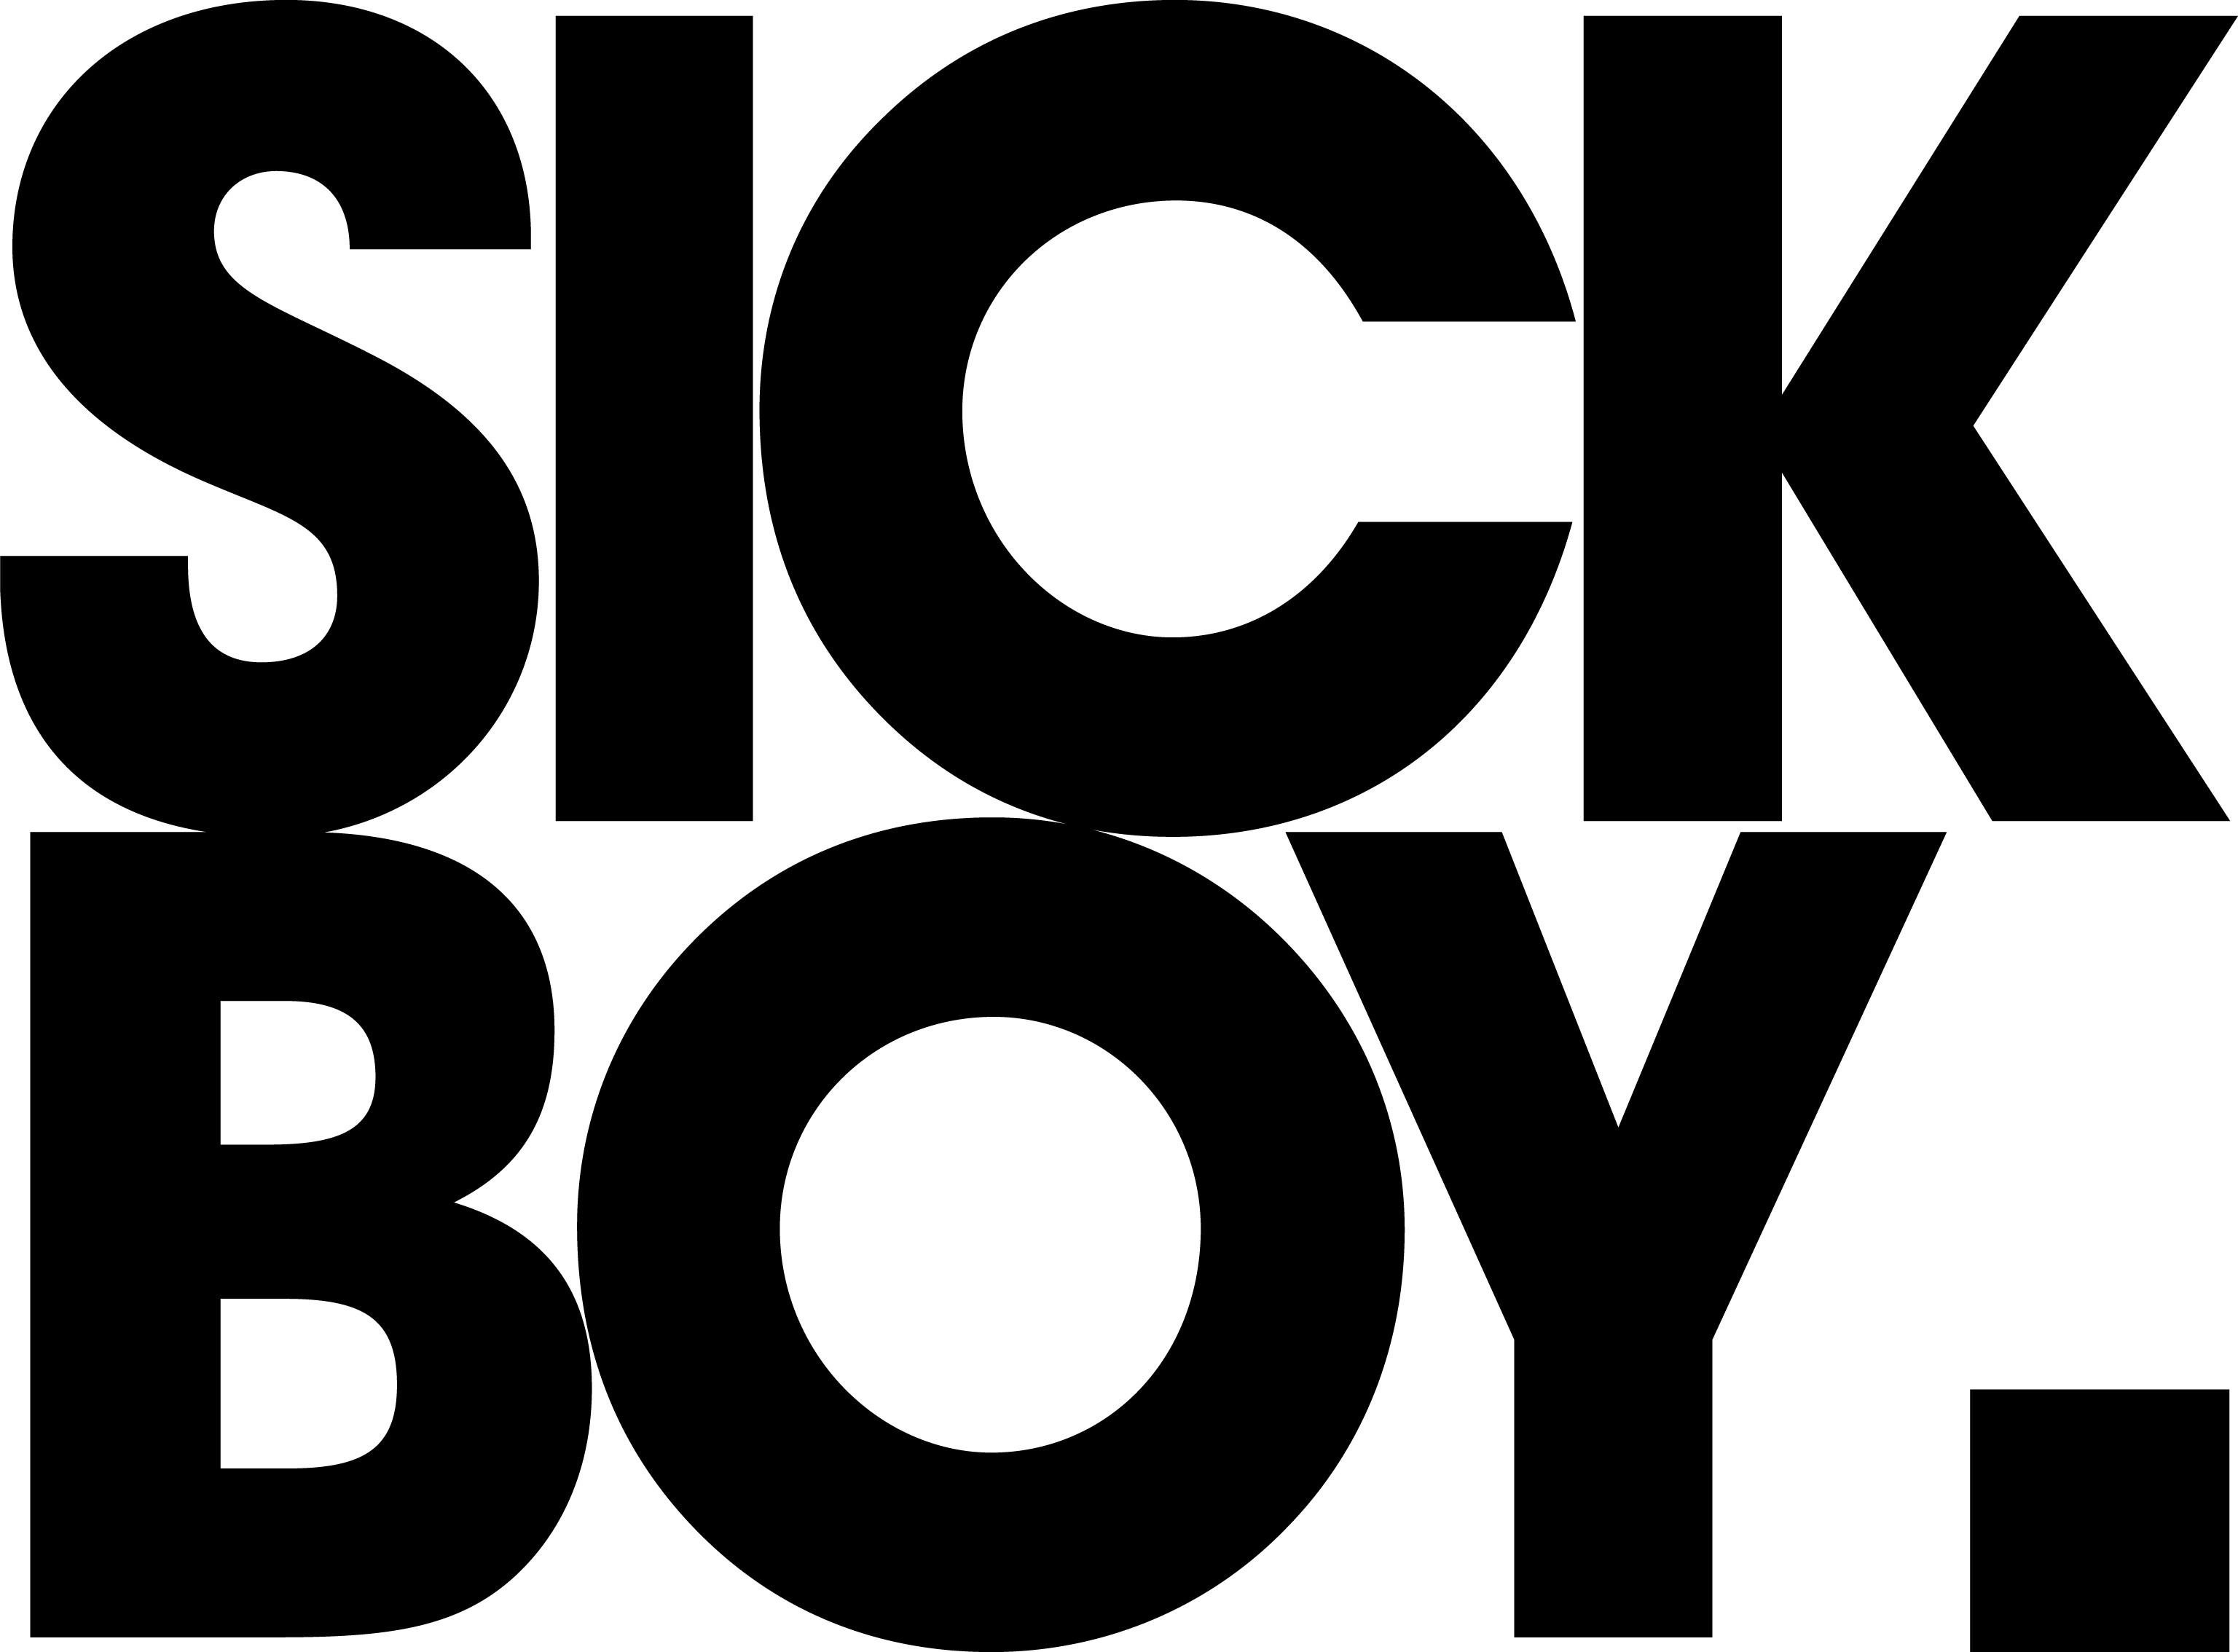 Sick Logo - Privacy Policy – SickBoy